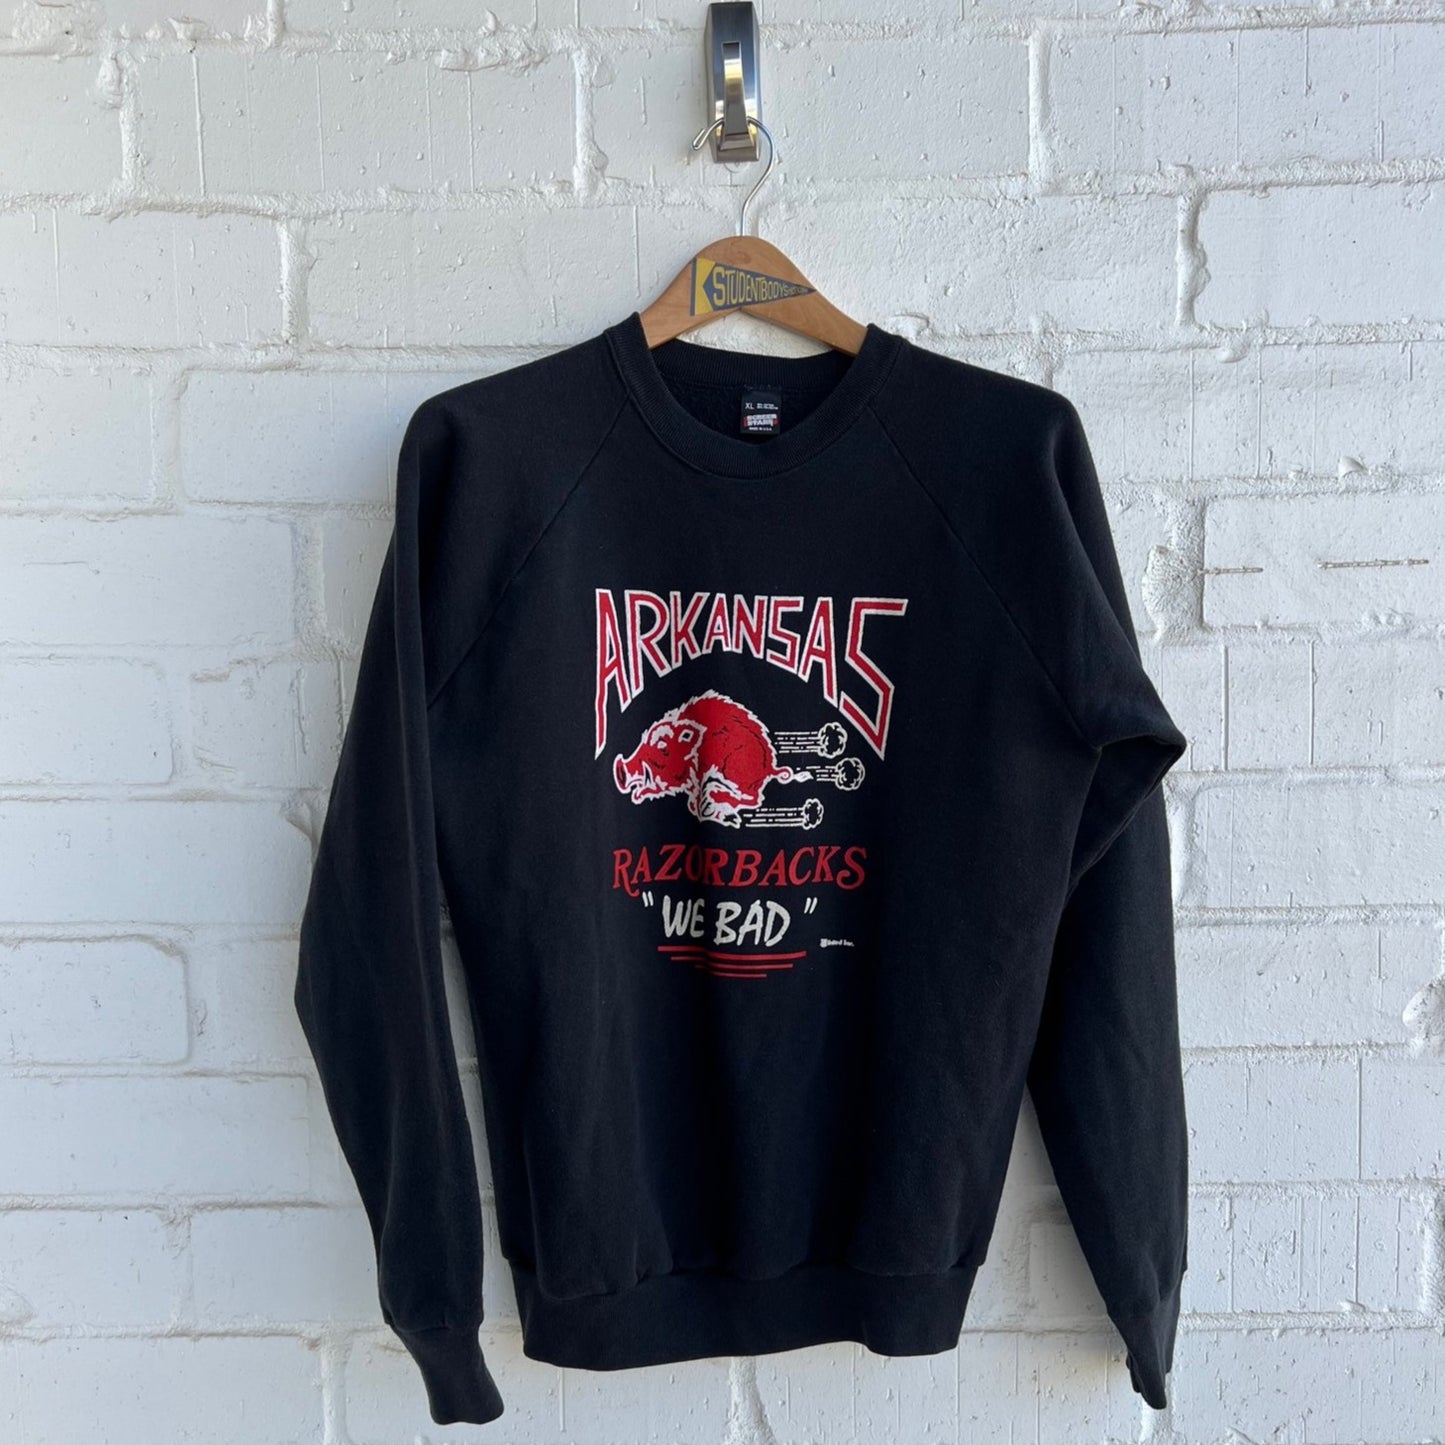 Vintage 1980s Arkansas Sweatshirt